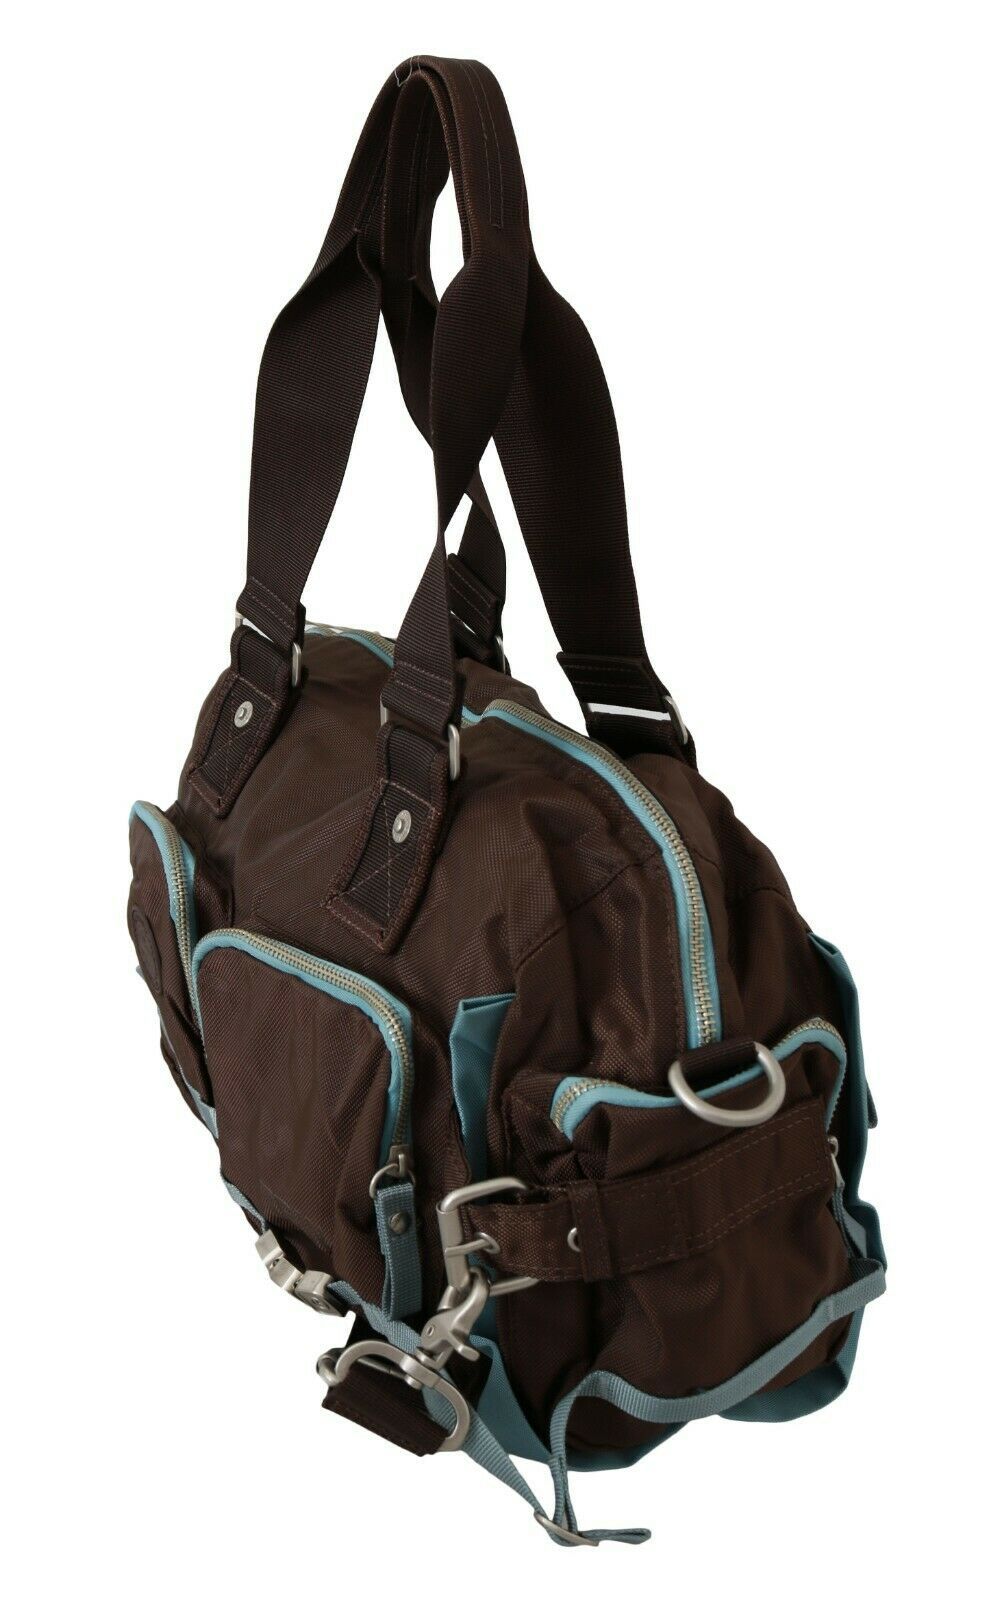 Elegant Duffel Travel Bag in Earthy Brown